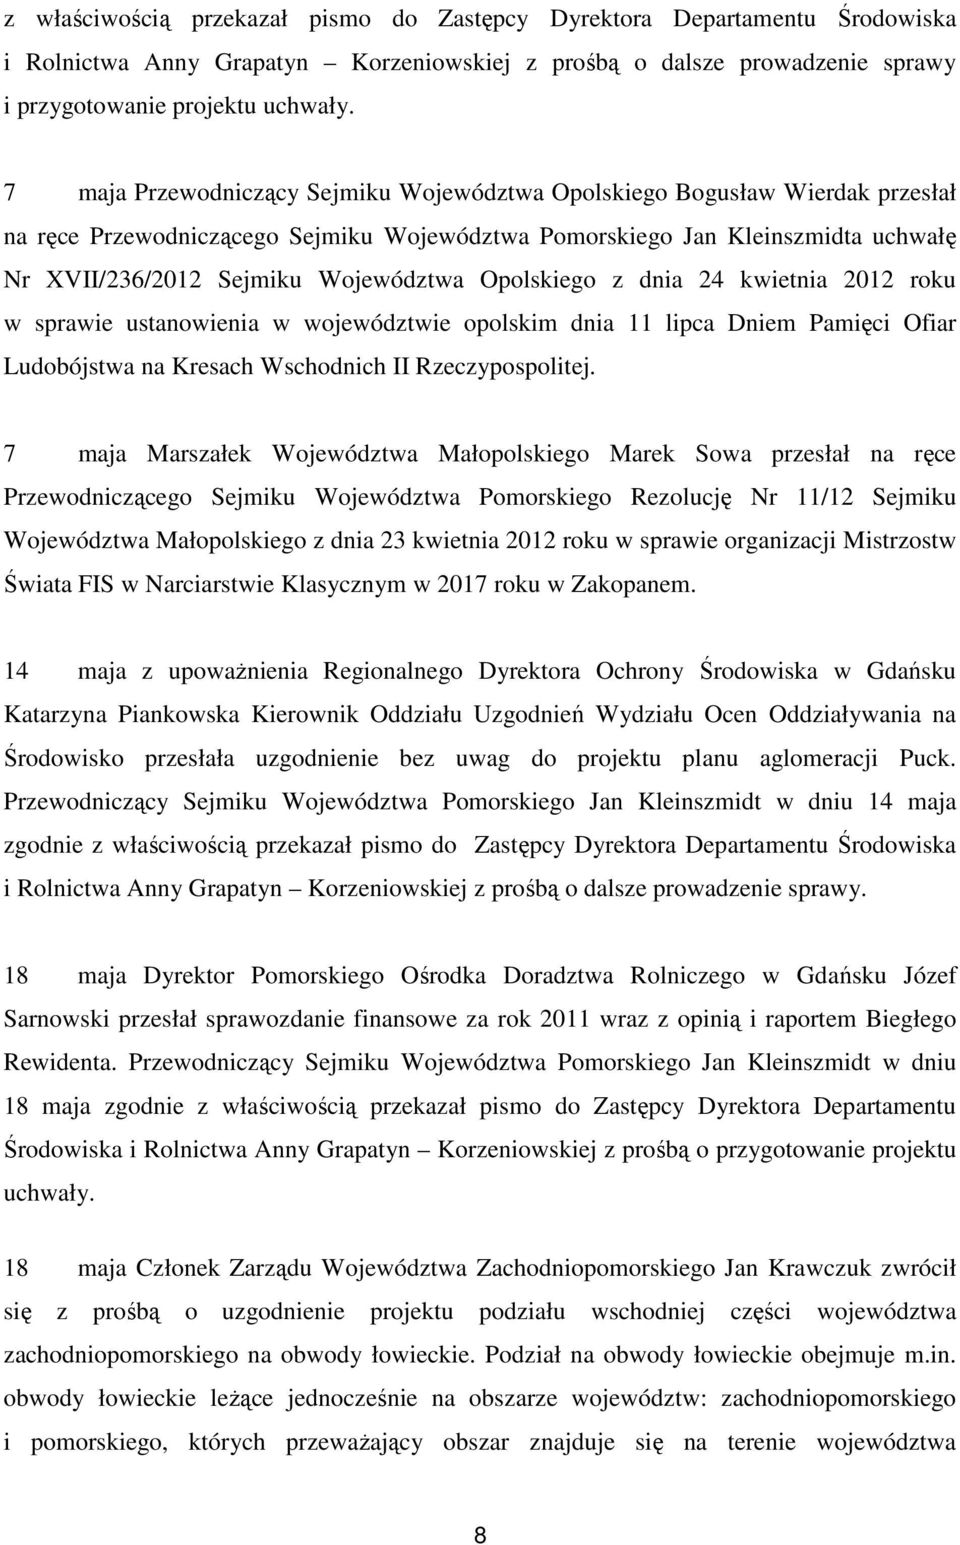 Opolskiego z dnia 24 kwietnia 2012 roku w sprawie ustanowienia w województwie opolskim dnia 11 lipca Dniem Pamięci Ofiar Ludobójstwa na Kresach Wschodnich II Rzeczypospolitej.